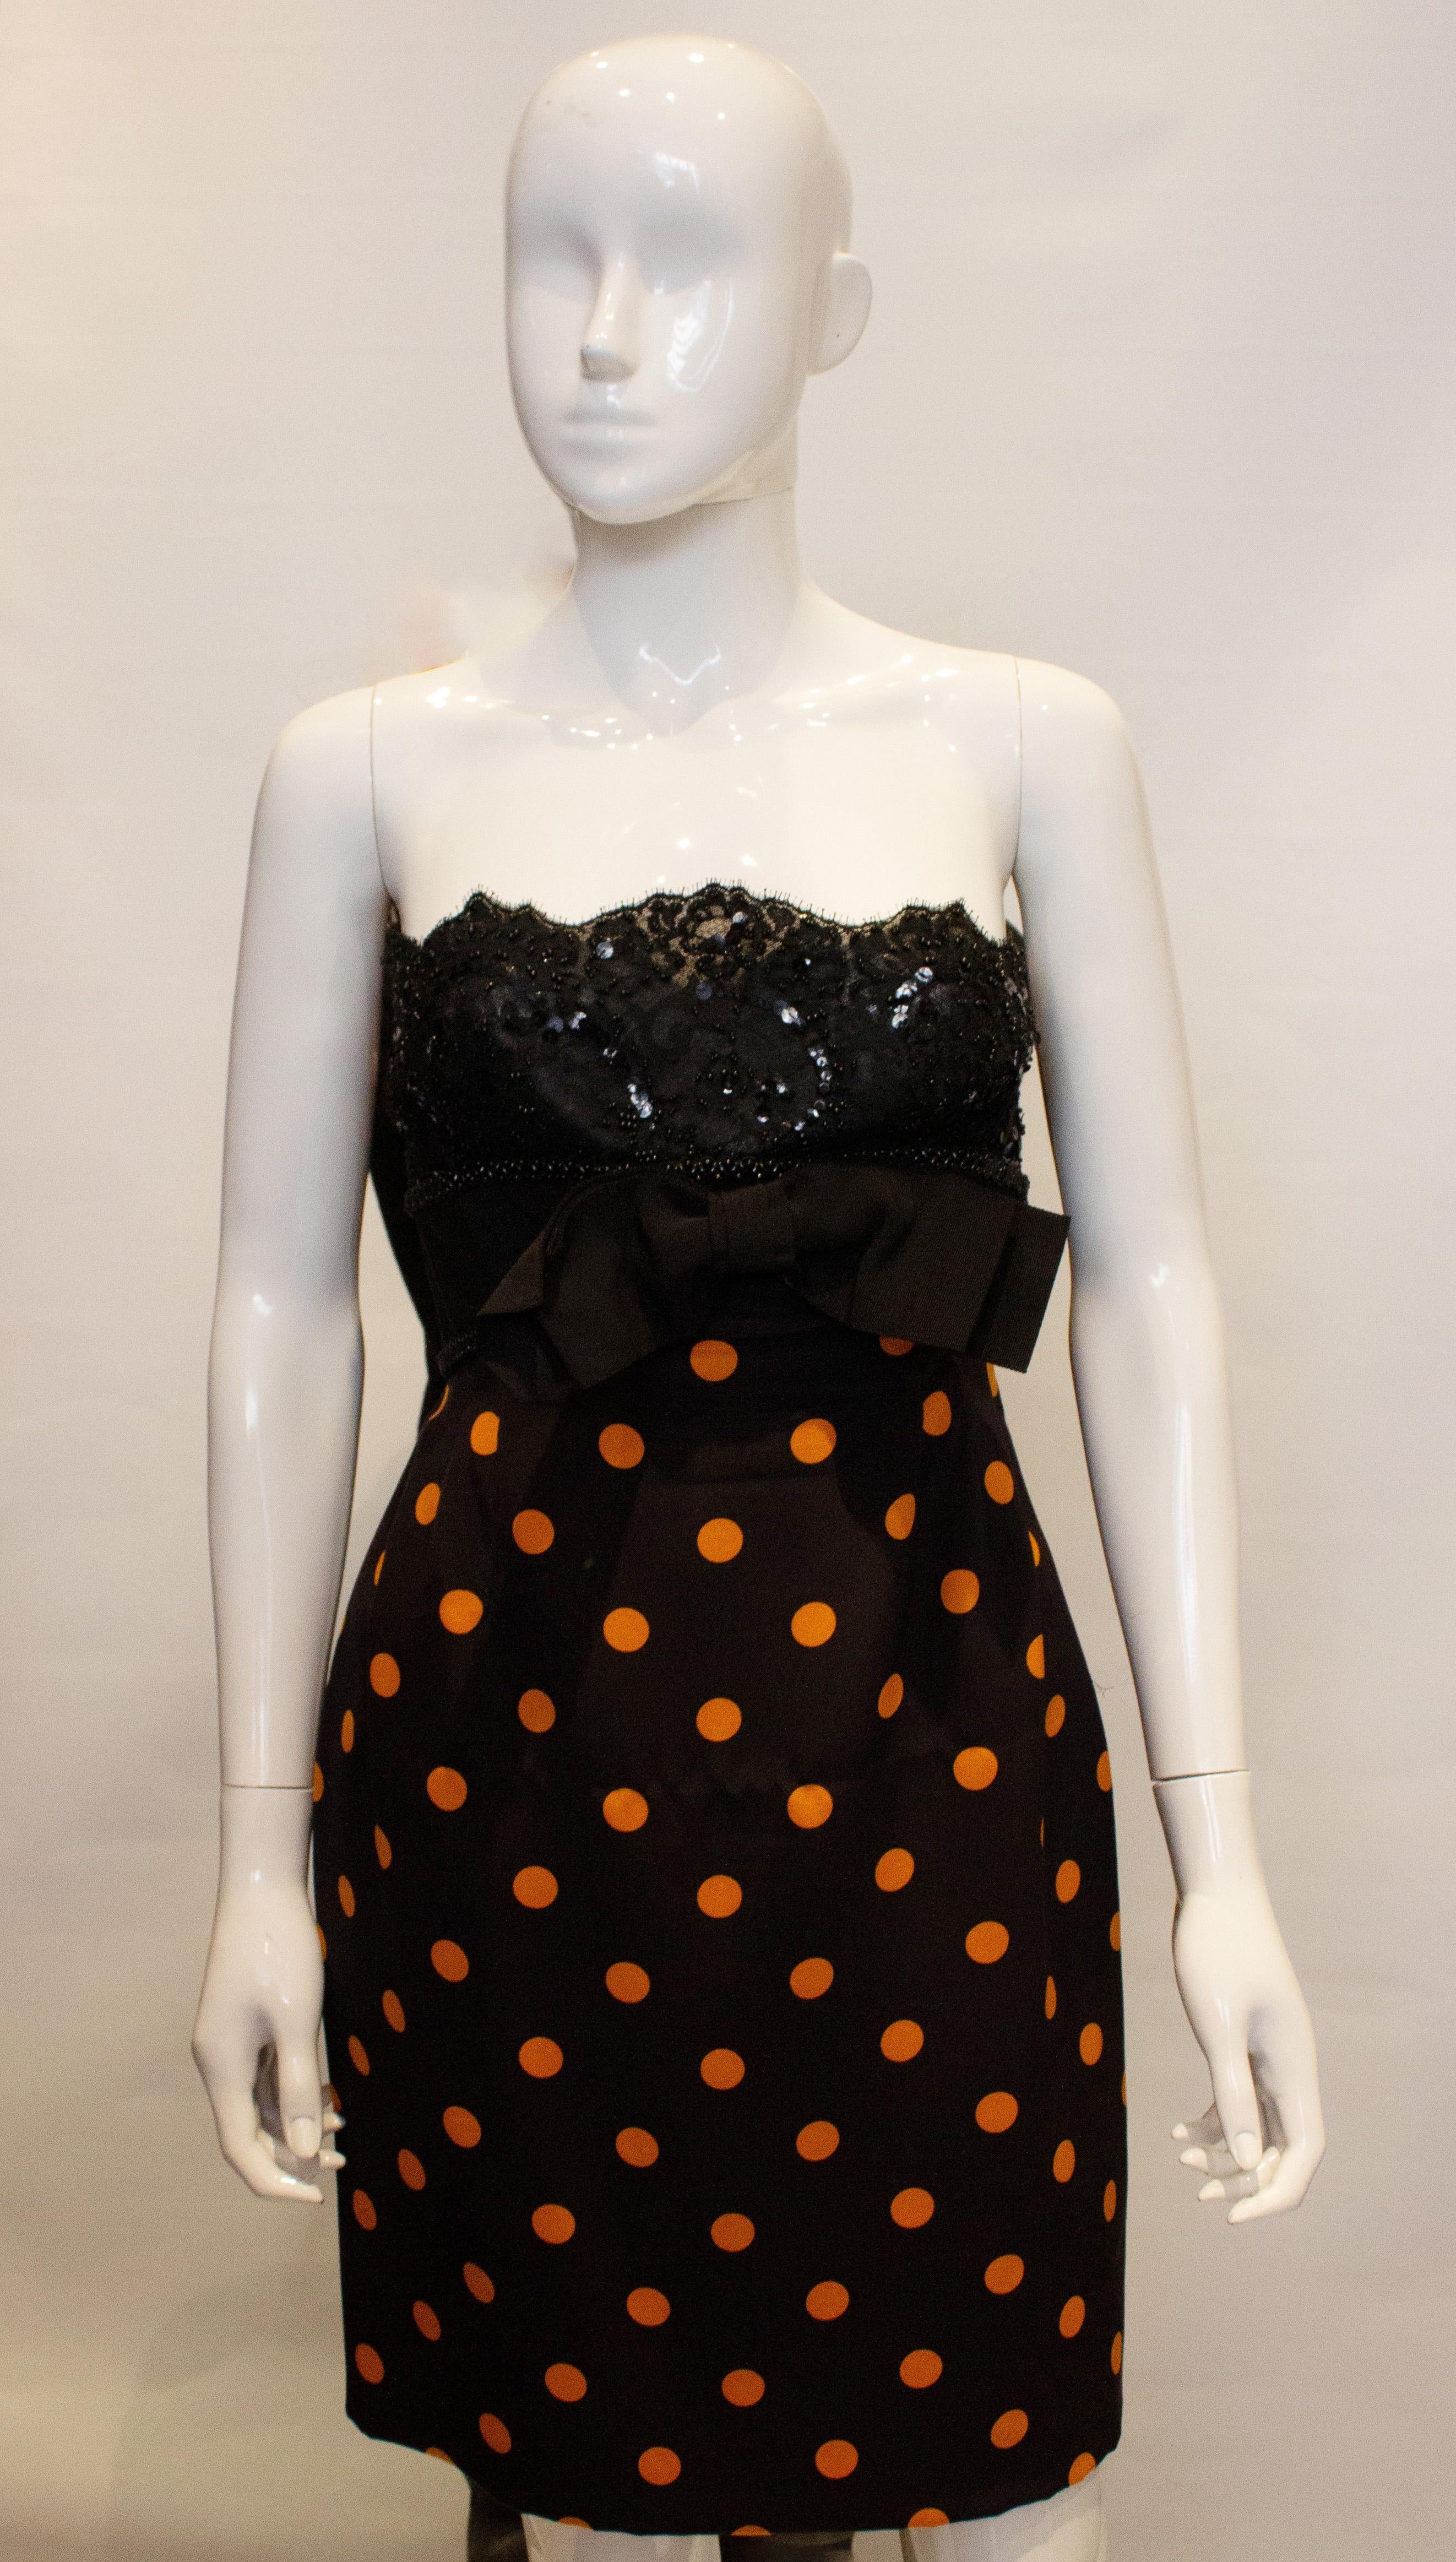 Ein schickes und hübsches Vintage-Cocktailkleid von Odicini Couture. Das Kleid hat ein Spitzenoberteil und einen Tupfenrock mit Schleife vorne. Es ist trägerlos, aber es können leicht Schulterträger hinzugefügt werden. Das Kleid ist vollständig